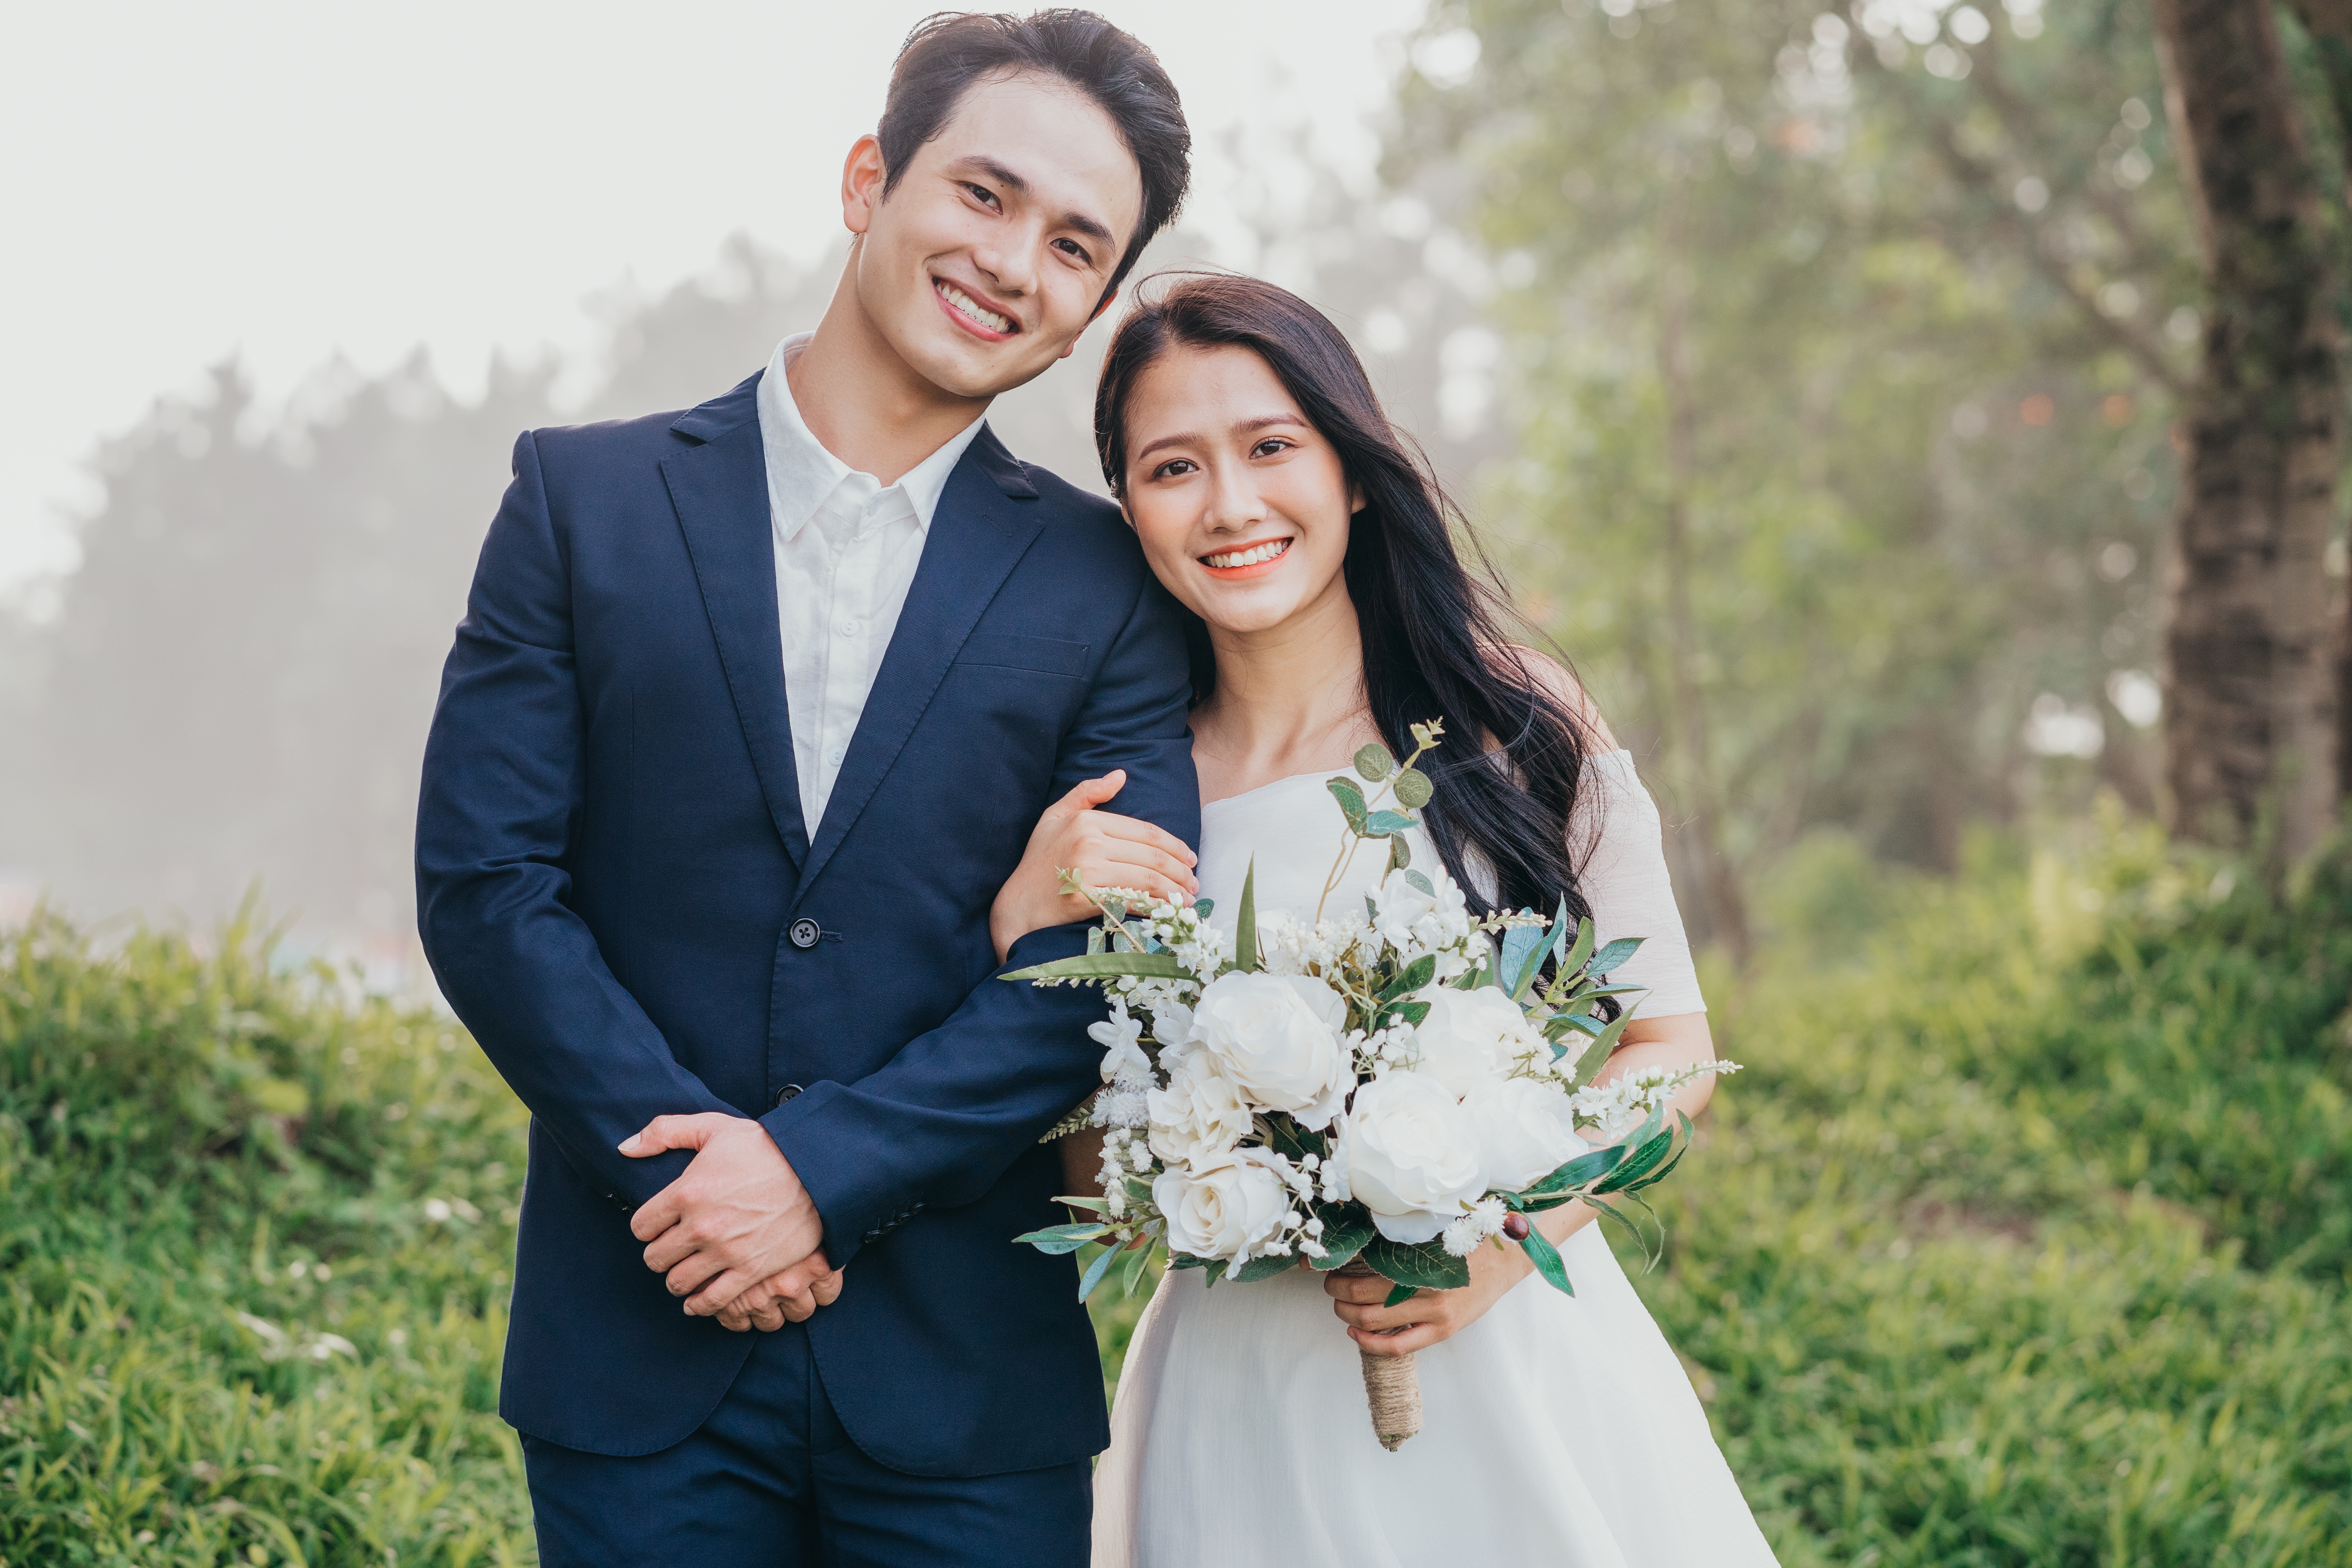 Ein junges Paar an seinem Hochzeitstag | Quelle: Shutterstock